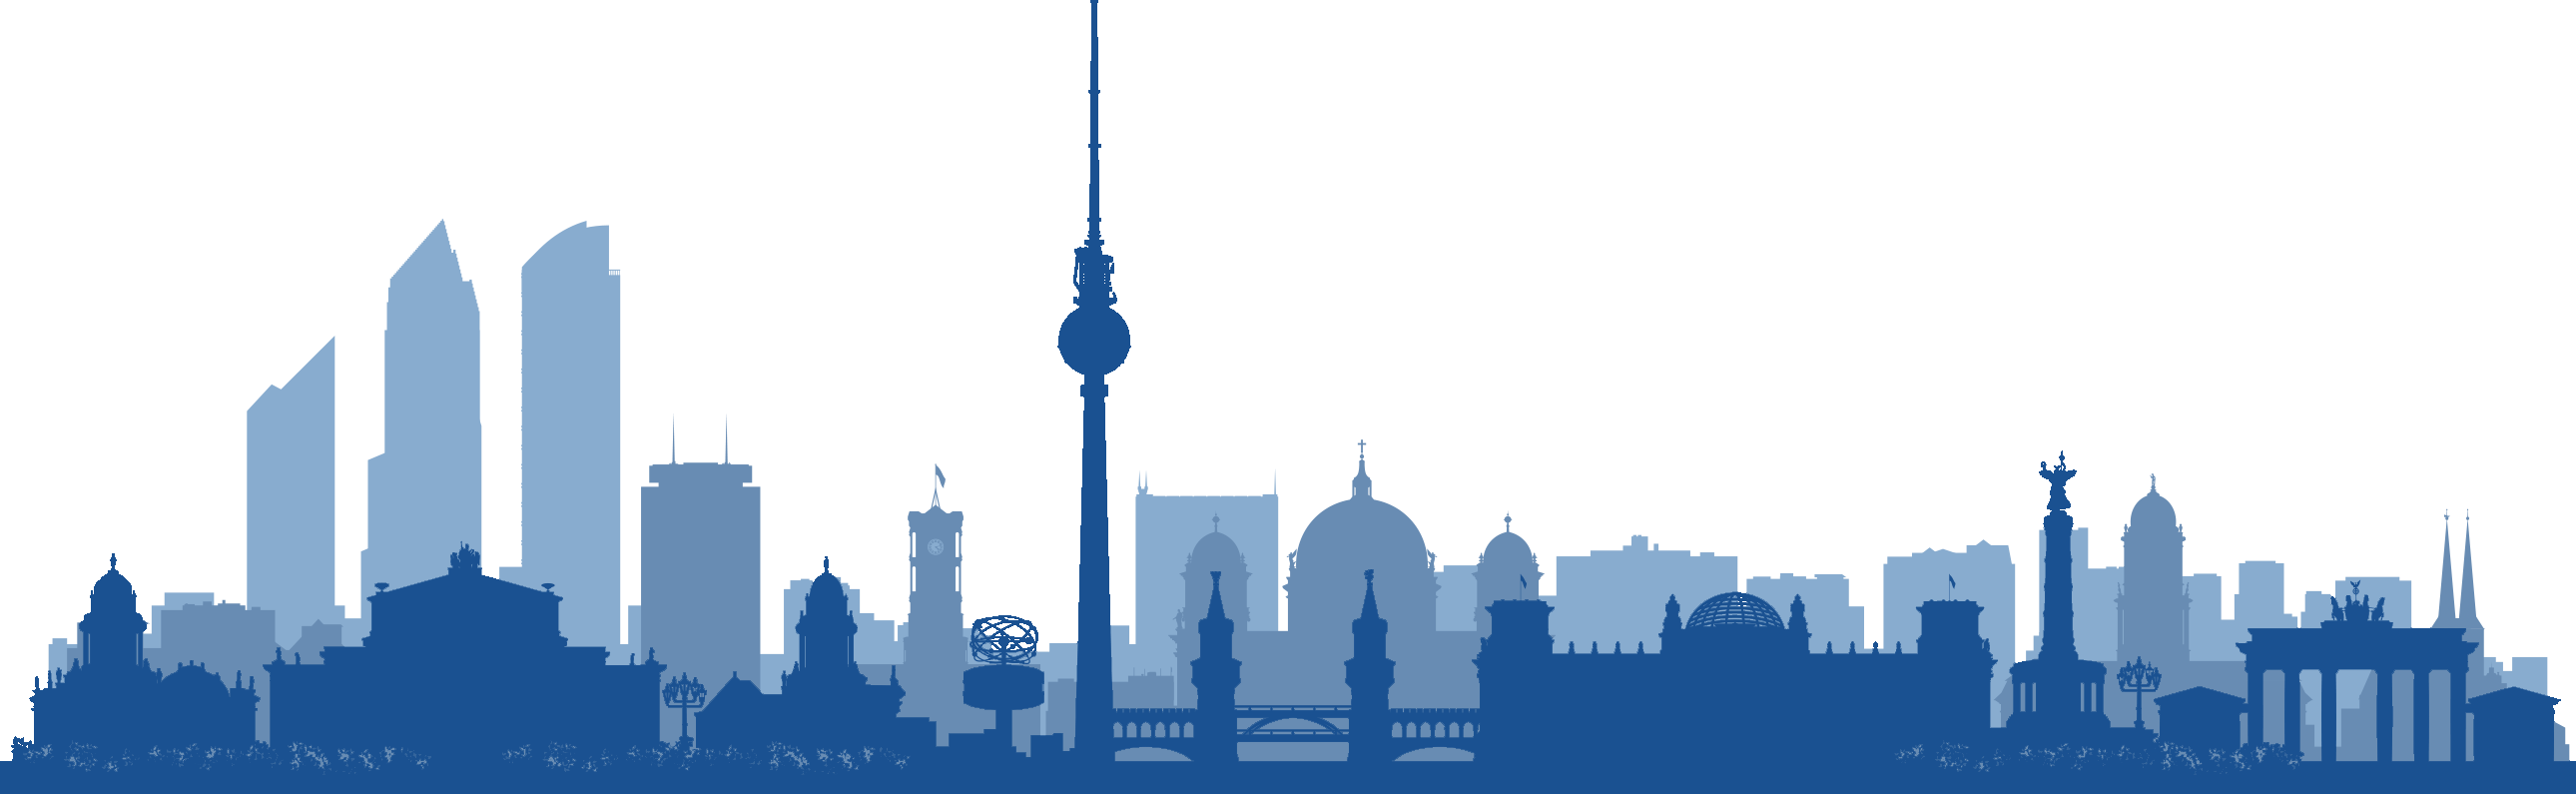 Berliner Skyline mit Fernsehturm und Friedensengel